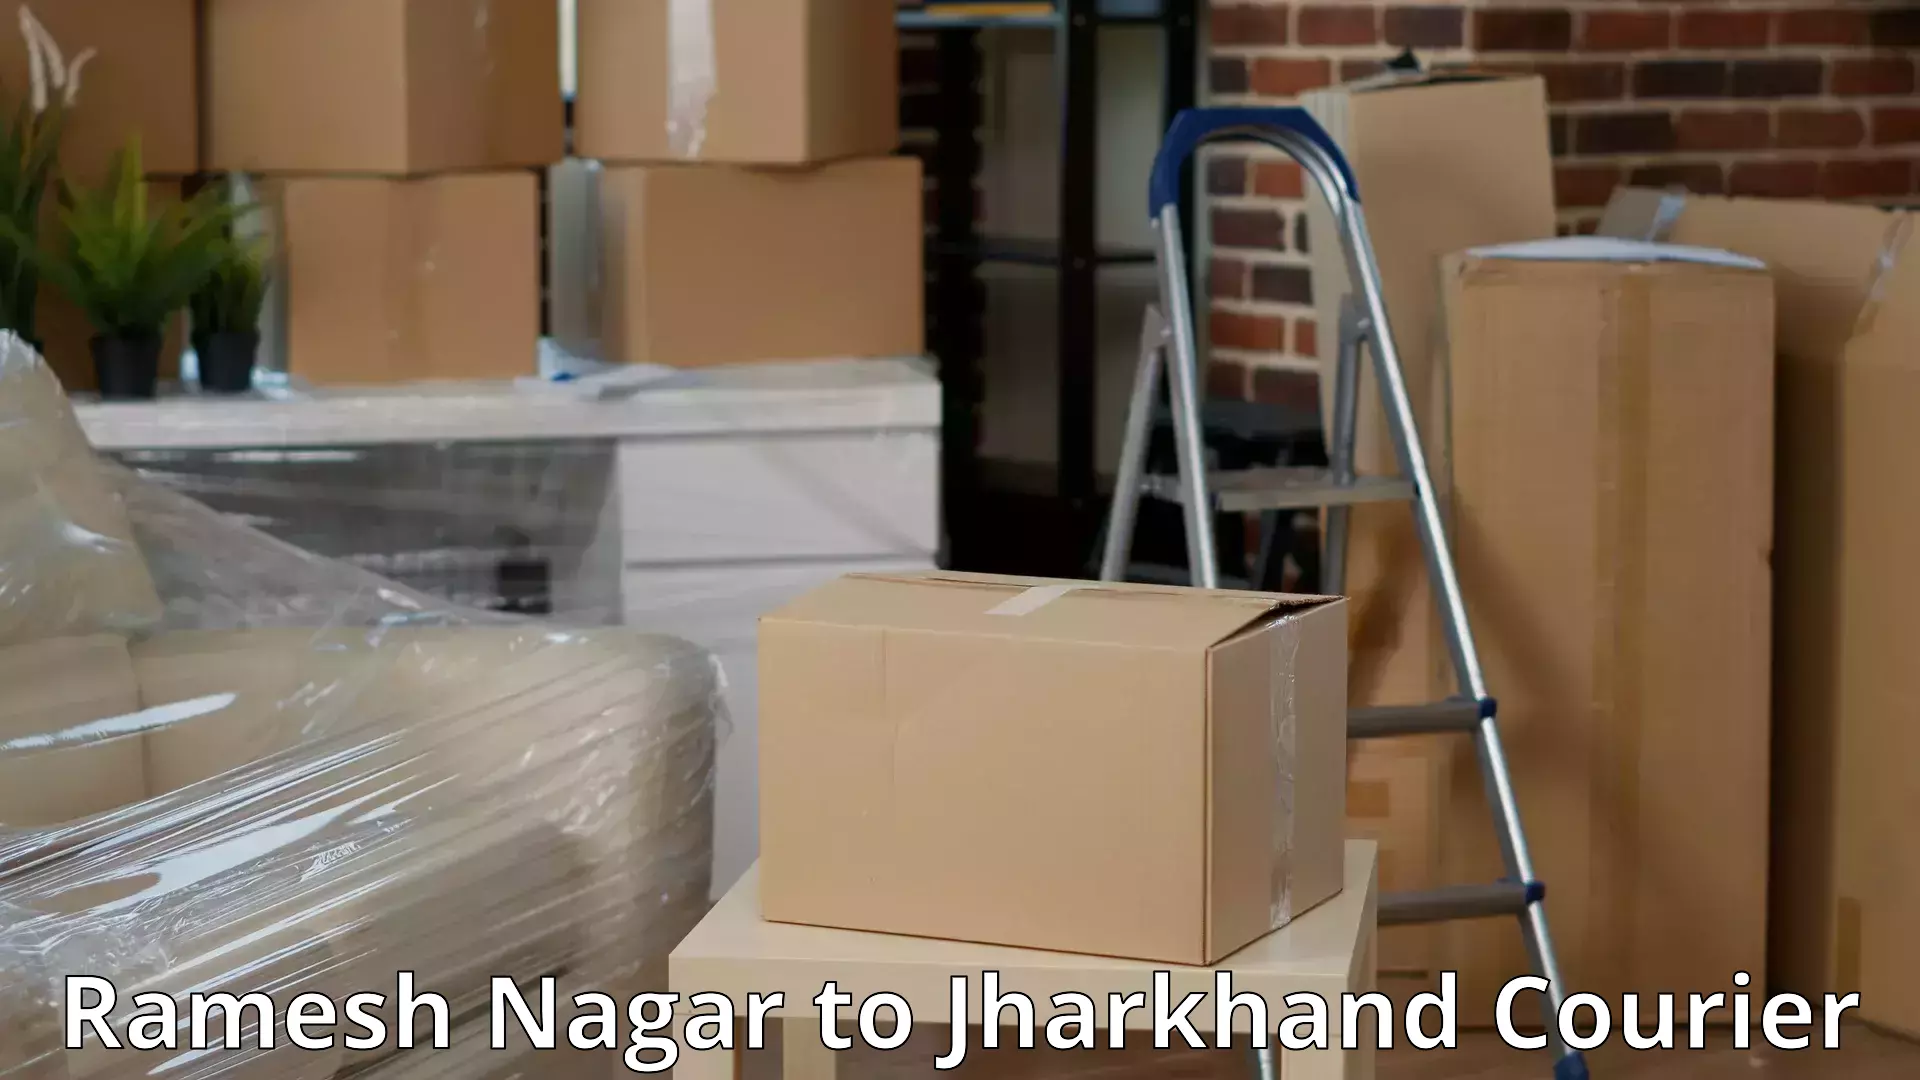 Furniture handling services Ramesh Nagar to Seraikela Kharsawan